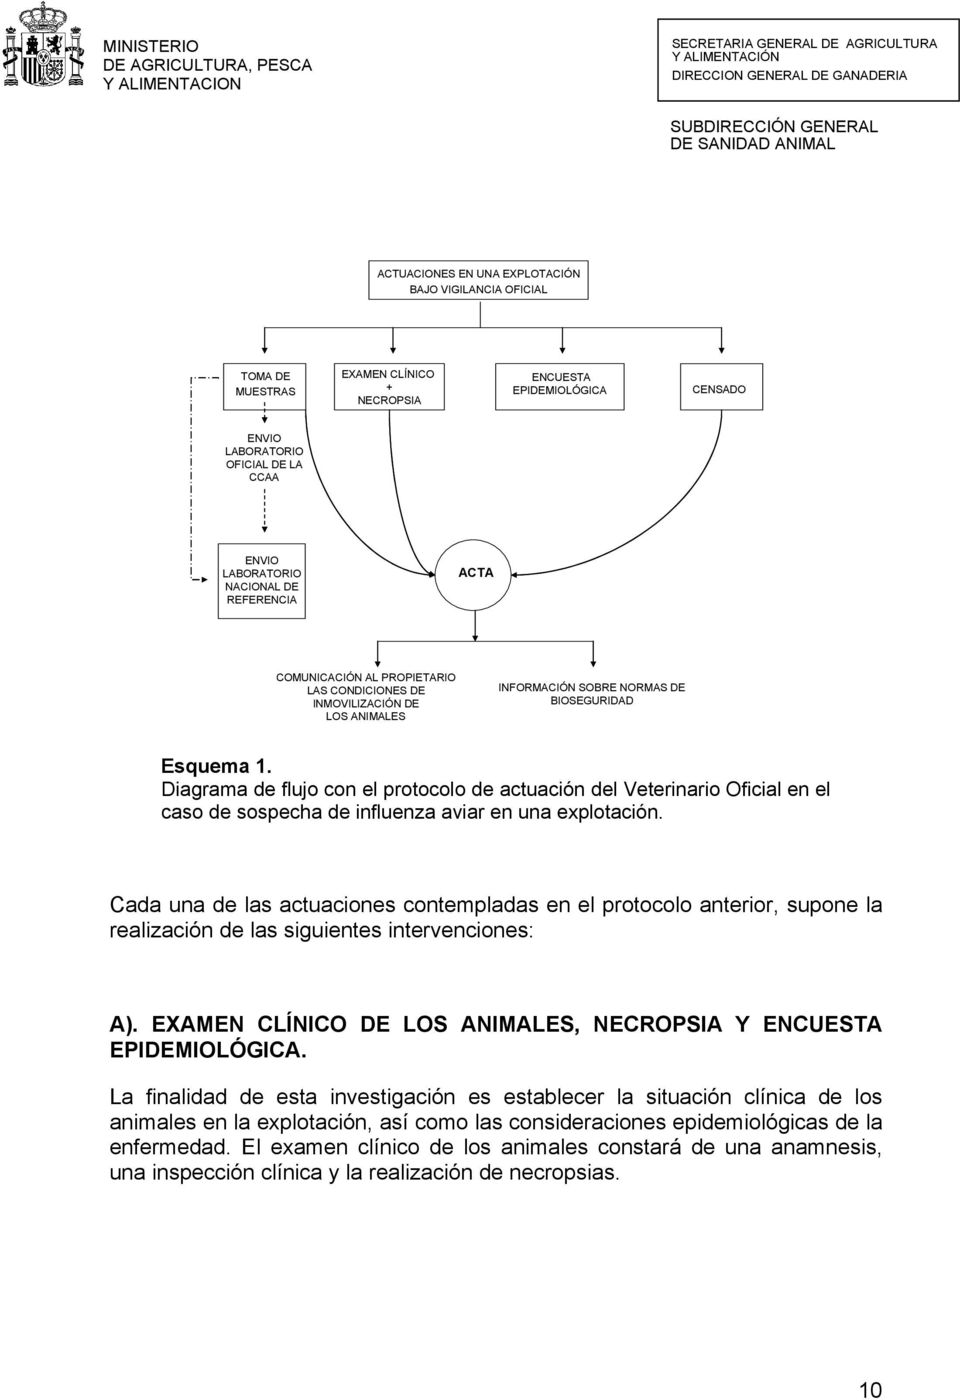 Diagrama de flujo con el protocolo de actuación del Veterinario Oficial en el caso de sospecha de influenza aviar en una explotación.